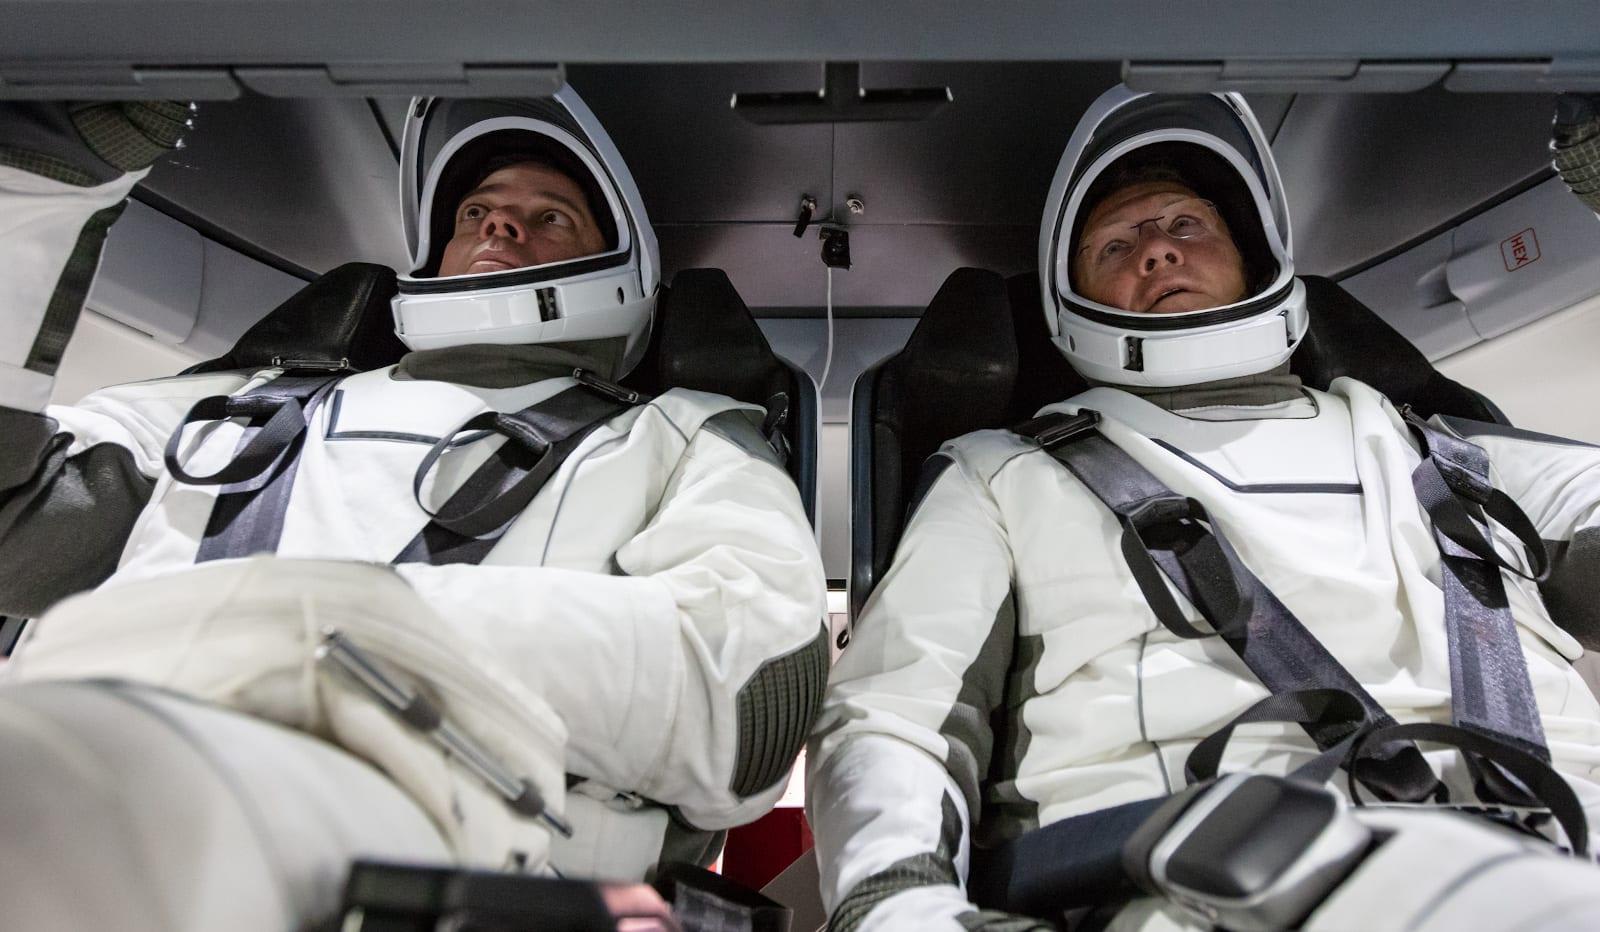 Astronautas realizarán caminatas espaciales fuera de la ISS